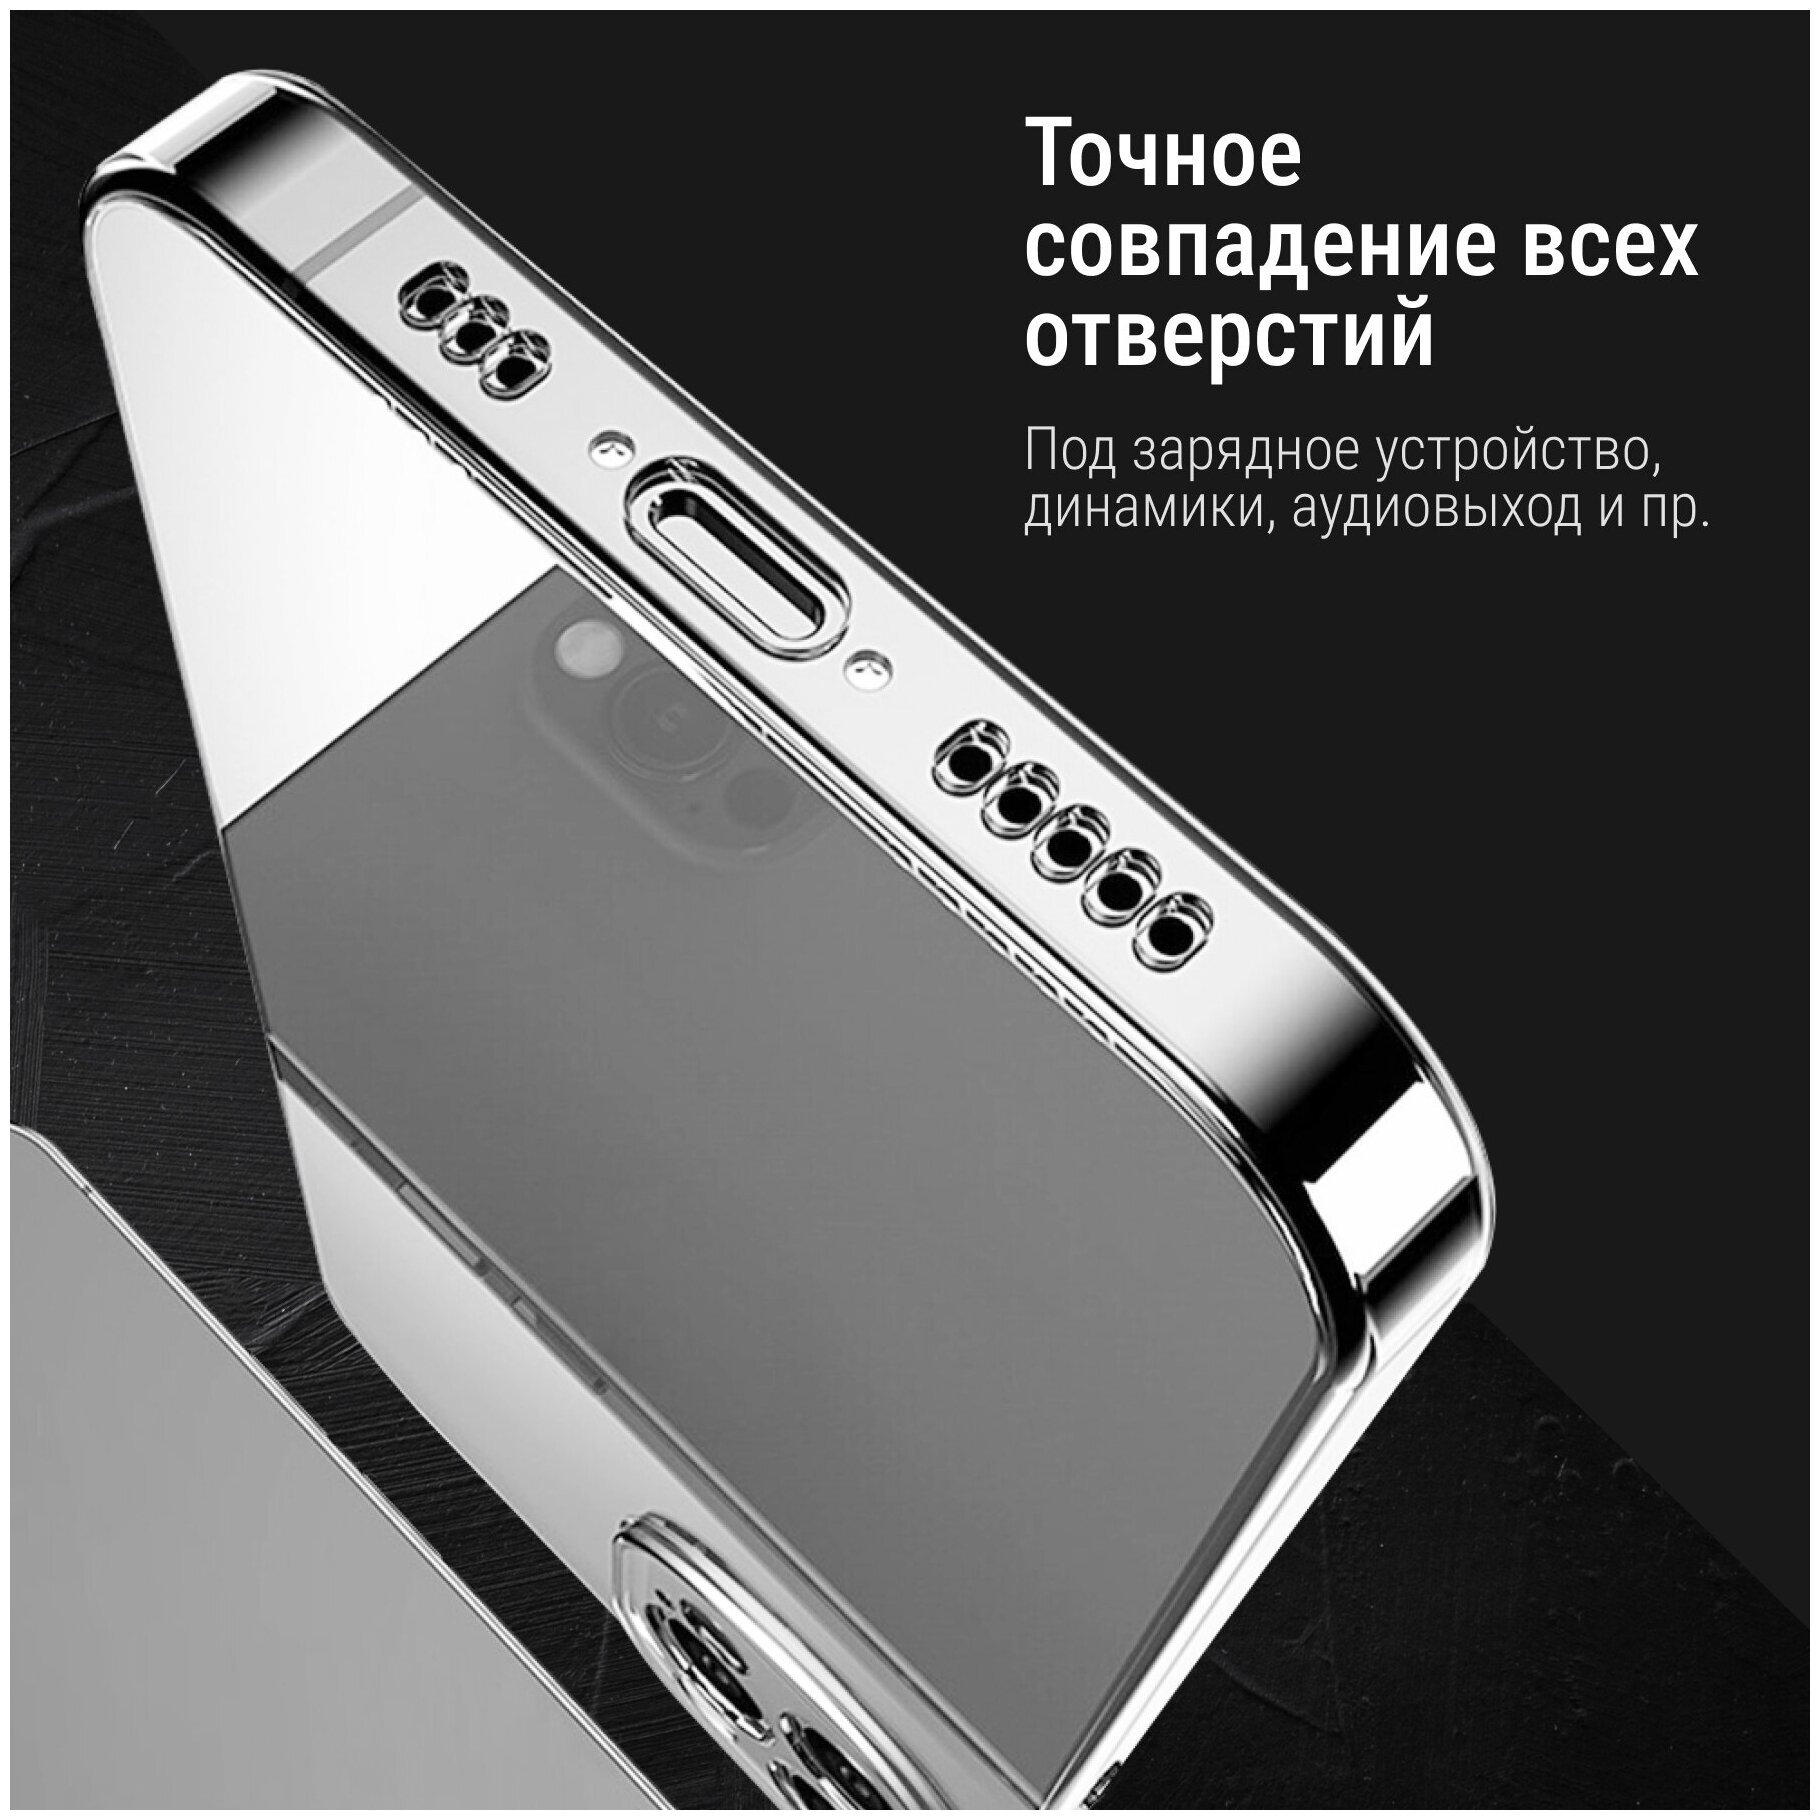 Ультратонкий силиконовый чехол для телефона Samsung Galaxy A50 A30S и A50S / Прозрачный защитный чехол для Самсунг Галакси А50 и А30 Эс и А50 Эс